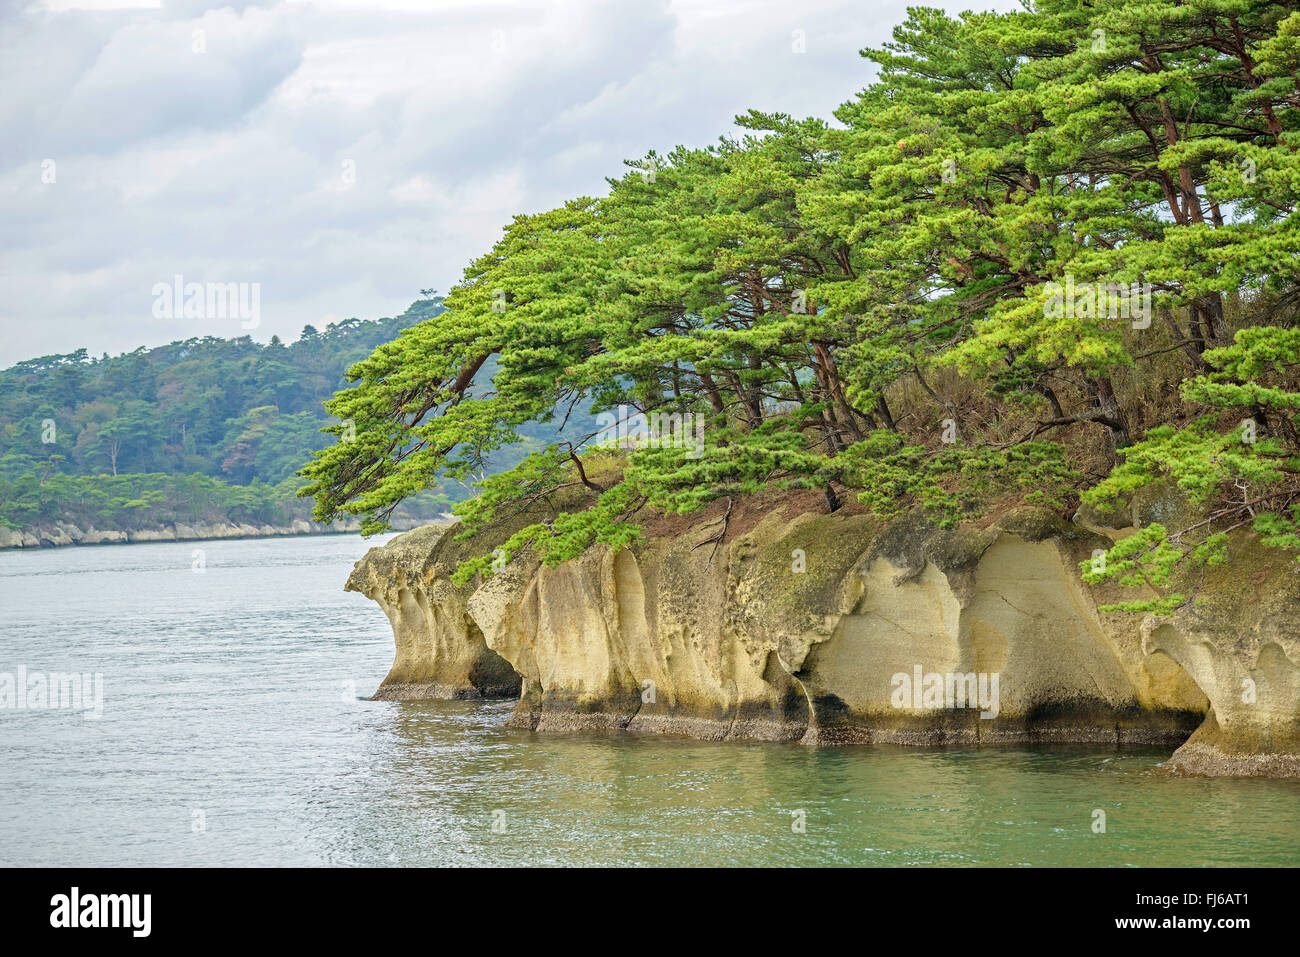 Japanese red pine (Pinus densiflora), on a rock in Bay of Matsushima, Japan, Honshu, Matsushima Stock Photo